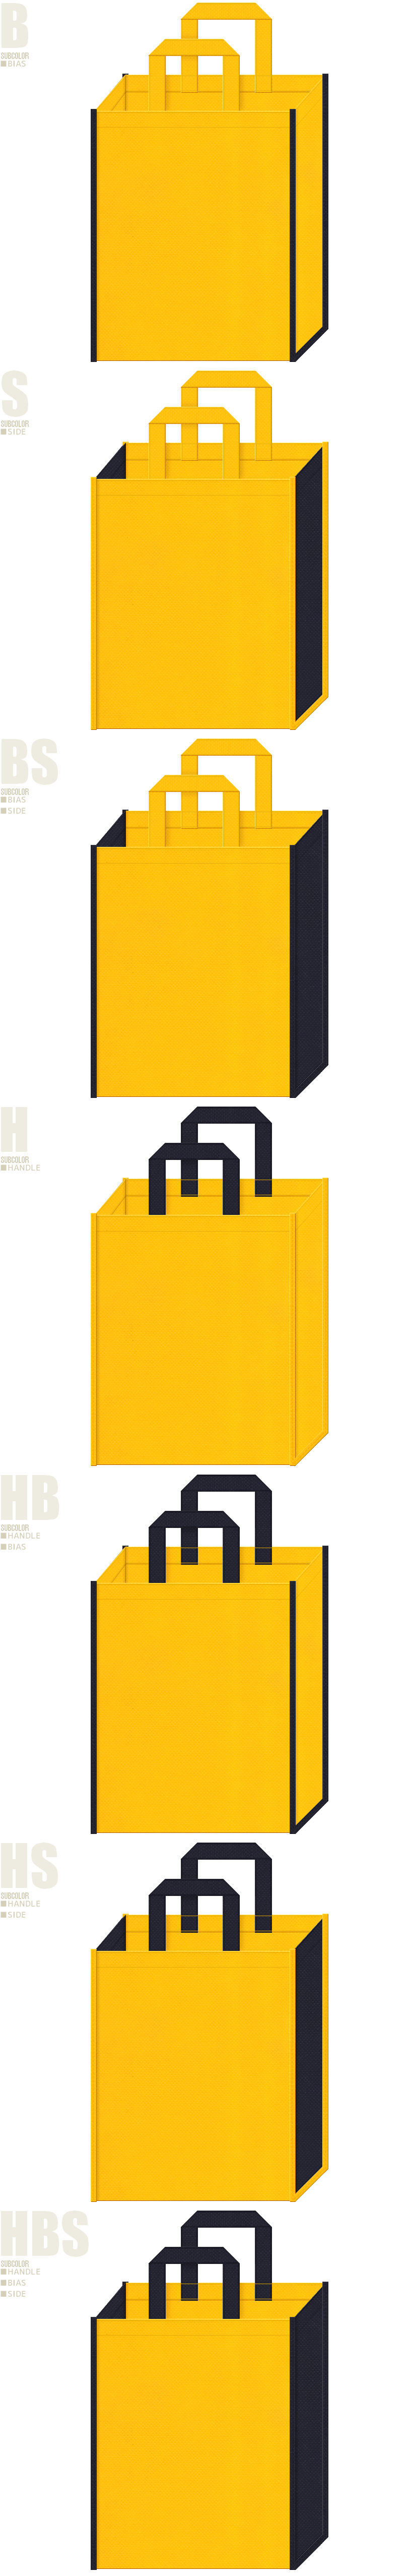 黄色と濃紺色の不織布バッグカラーシミュレーション7例